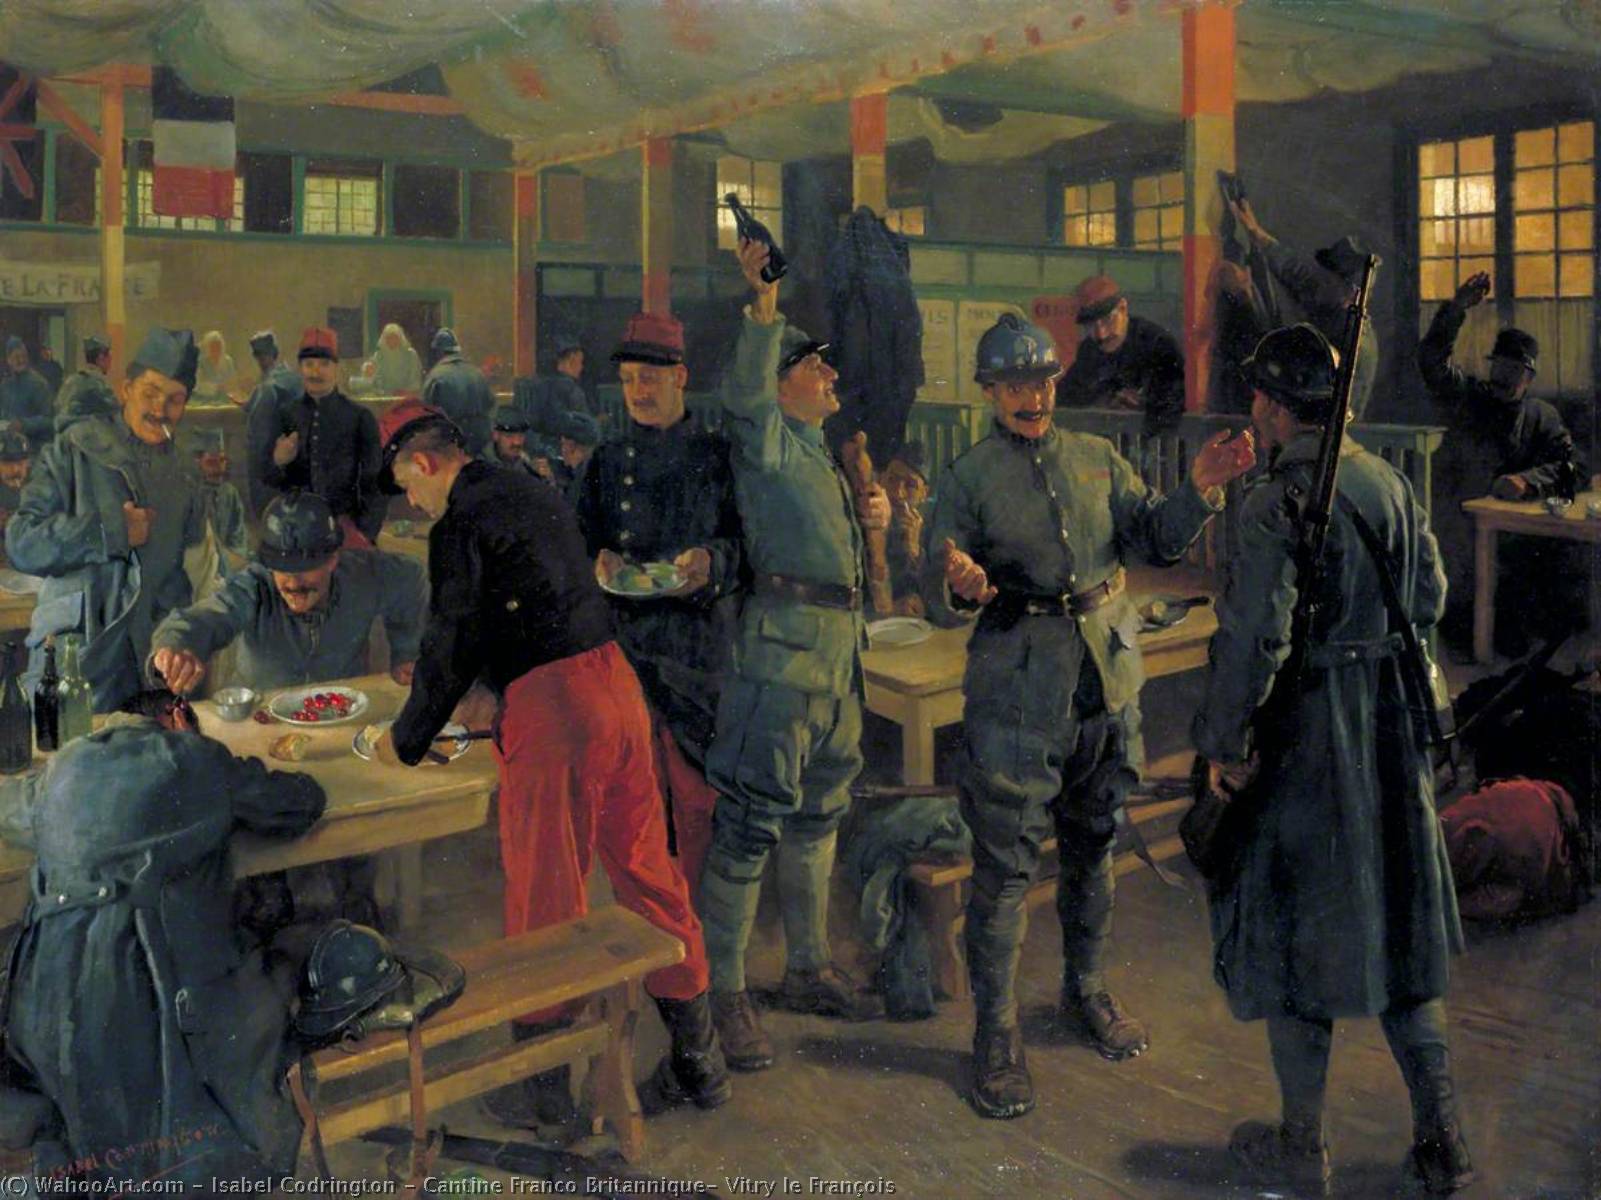 Order Paintings Reproductions Cantine Franco Britannique, Vitry le François, 1919 by Isabel Codrington (1874-1943) | ArtsDot.com